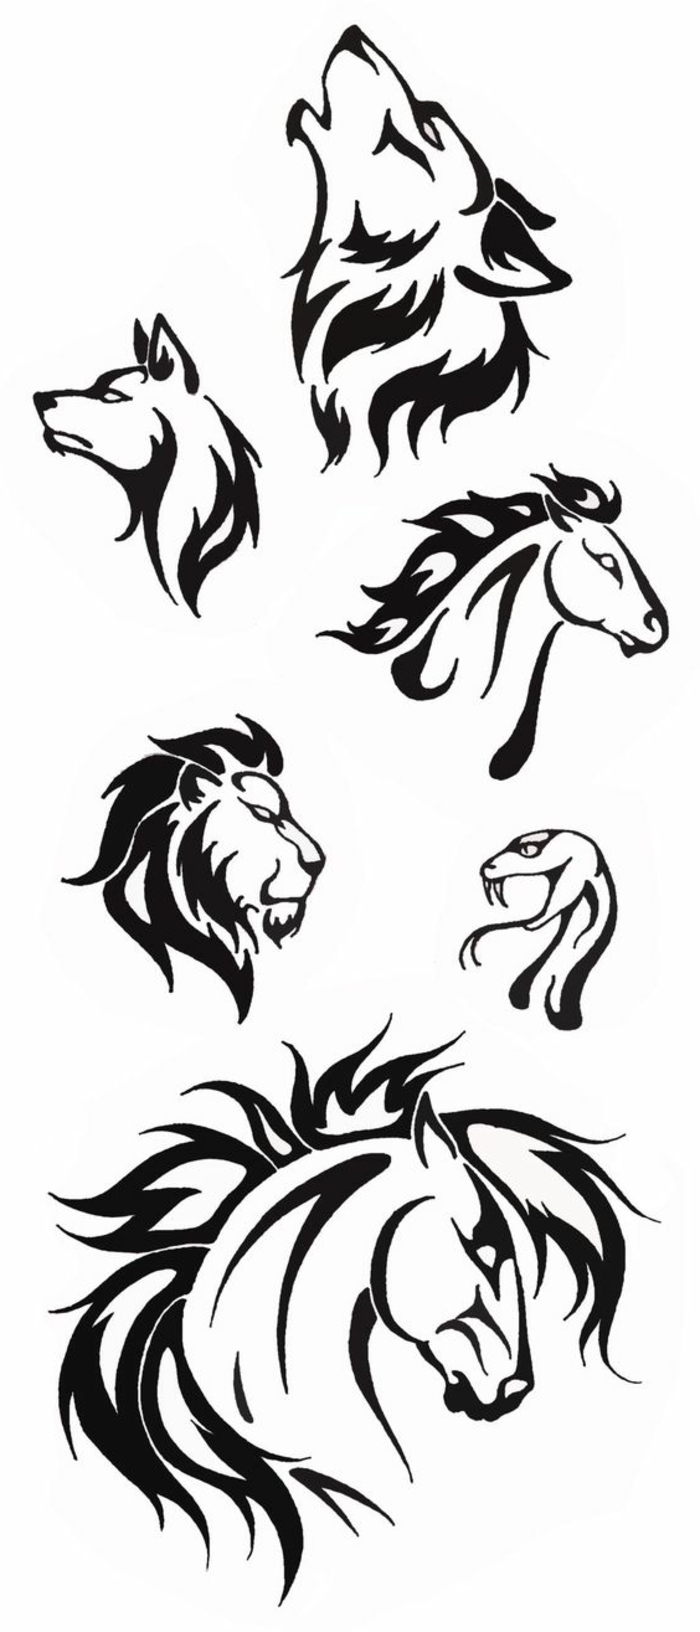 Itt mutatunk be különböző ötleteket a fekete tetoválásokra - farkasok, oroszlánok, két ló és egy kígyó